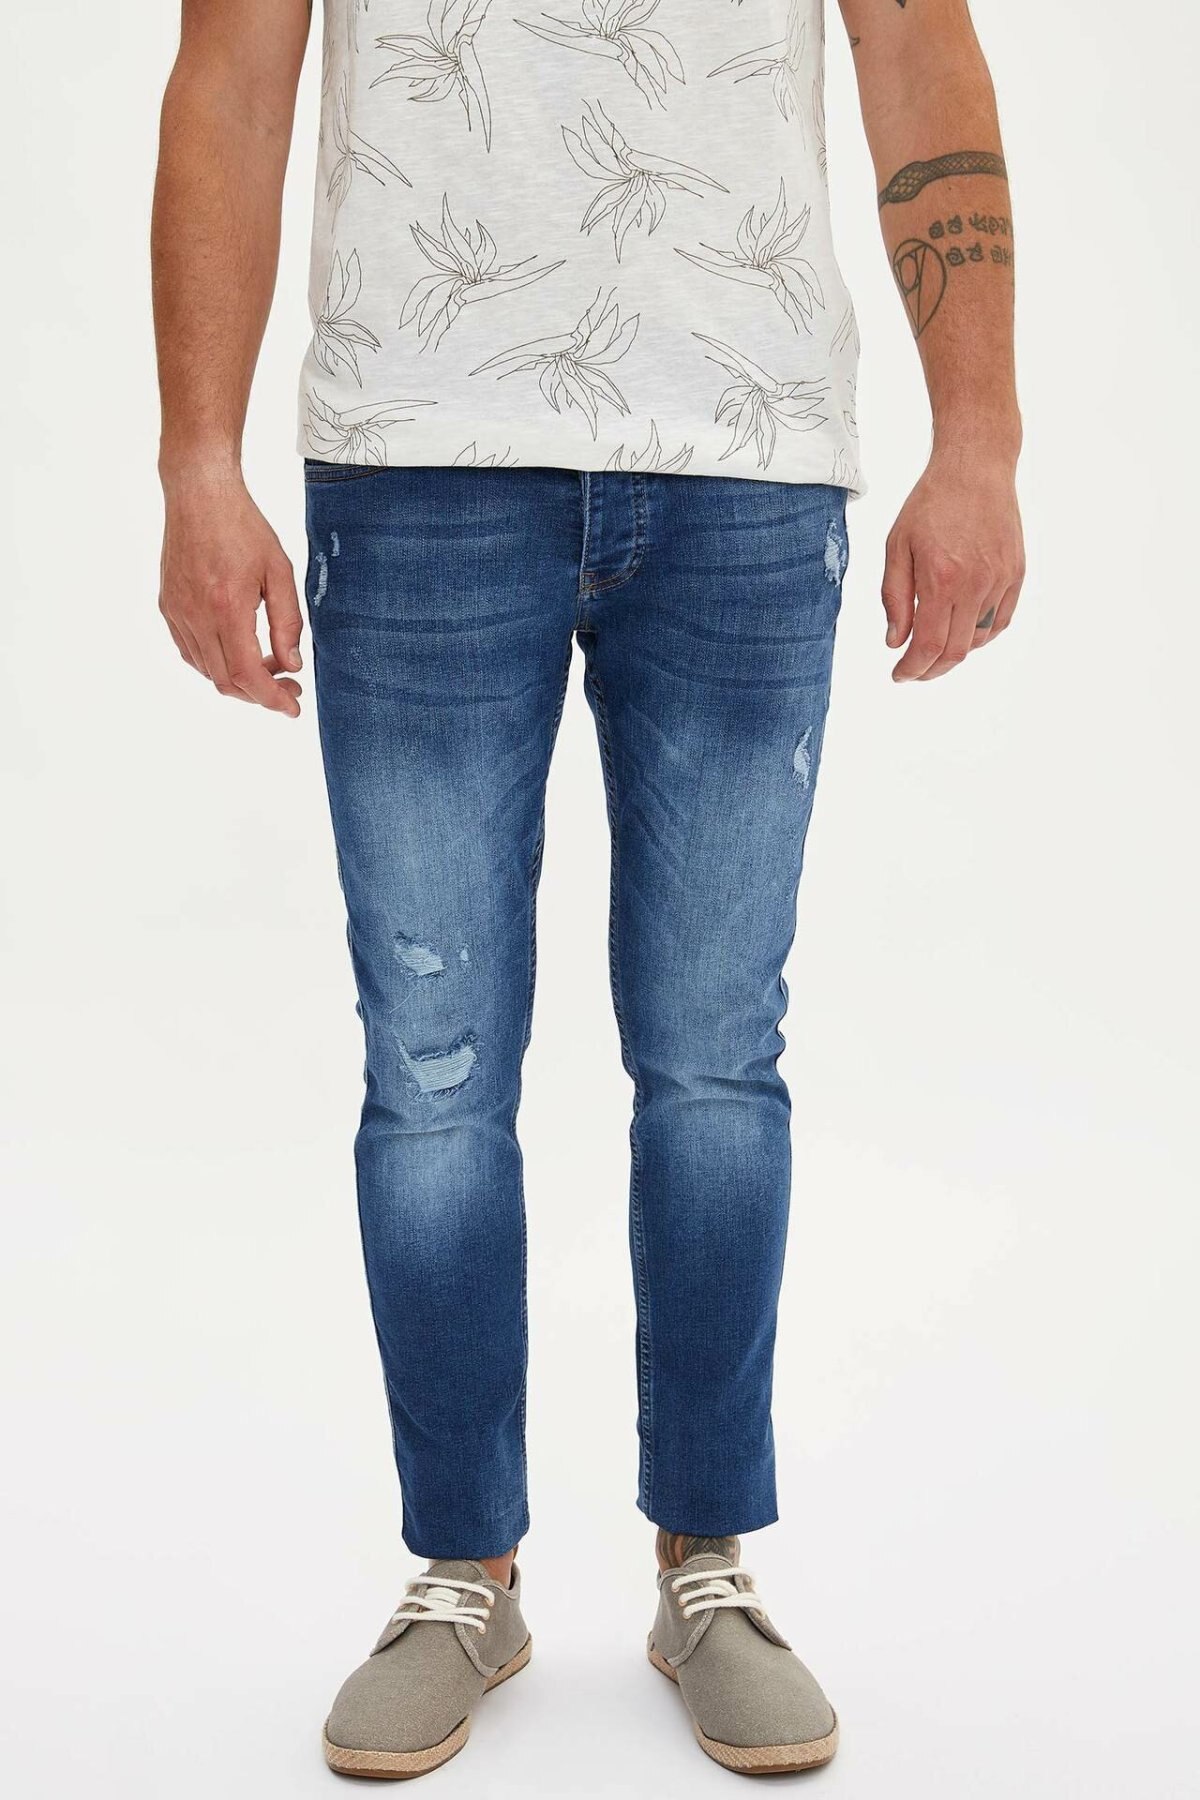 DeFacto Man Mode Wassen Lichtblauw Eenvoudige Broek Casual Classic Slim Denim Jeans Casual Elasticiteit Broek Mannelijke-L6098AZ19SM